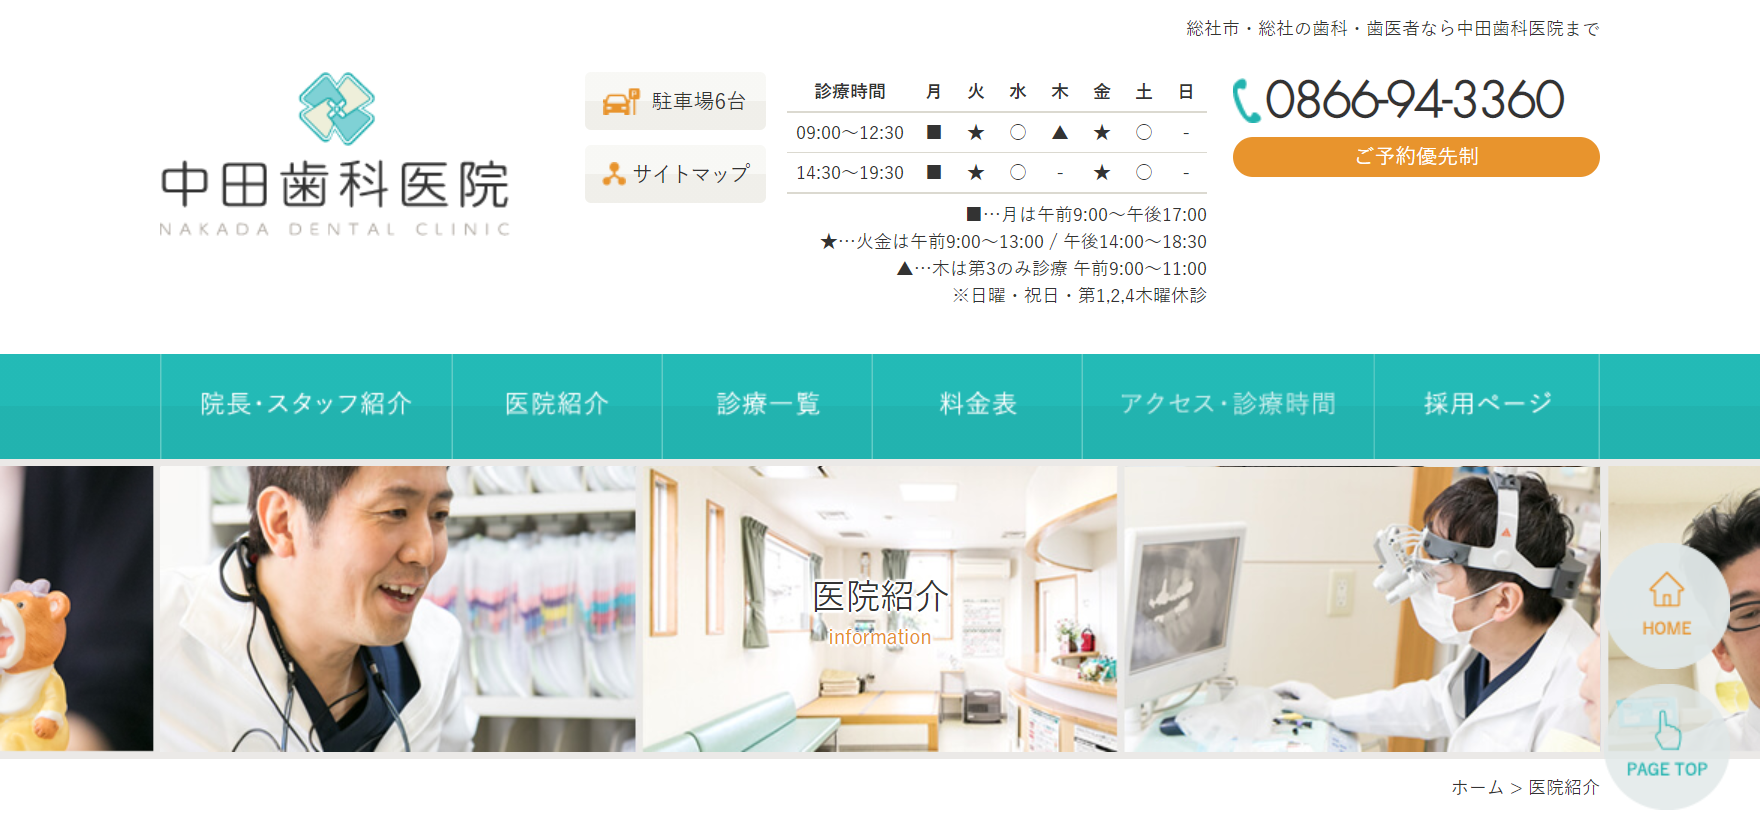 中田歯科医院のホームページ